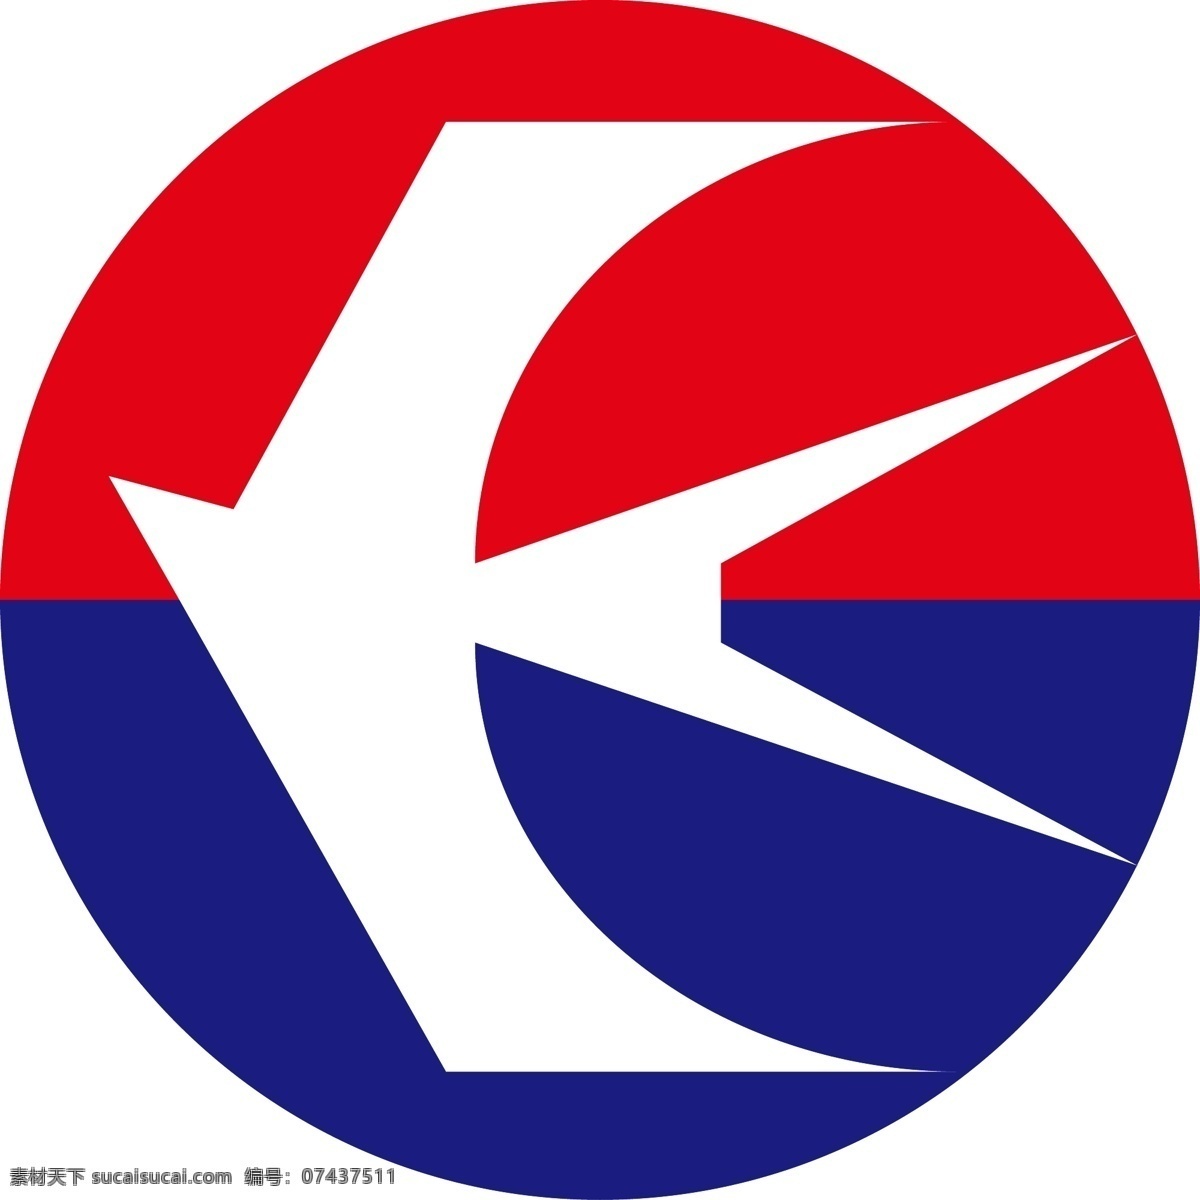 中国东方航空 logo 矢量图 标志 图形 标志图标 企业